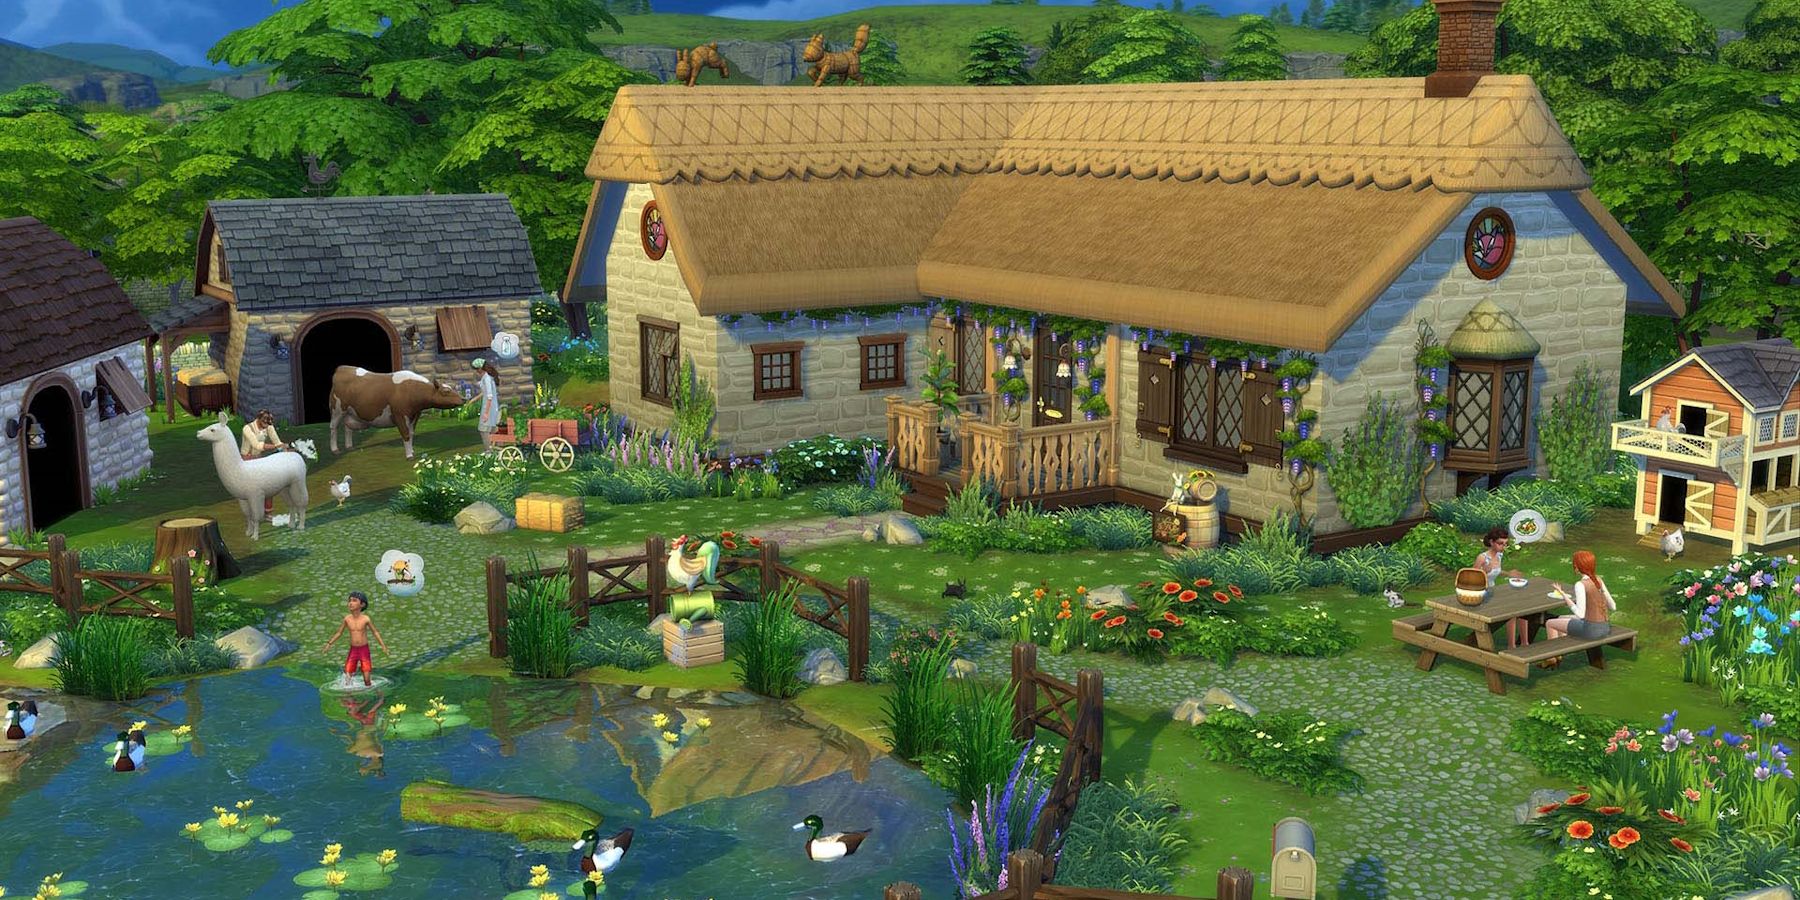 Sims 4 Cottage Living, gambar cottage yang bagus dengan binatang dan kolam bebek serta anak-anak bermain di Sims 4